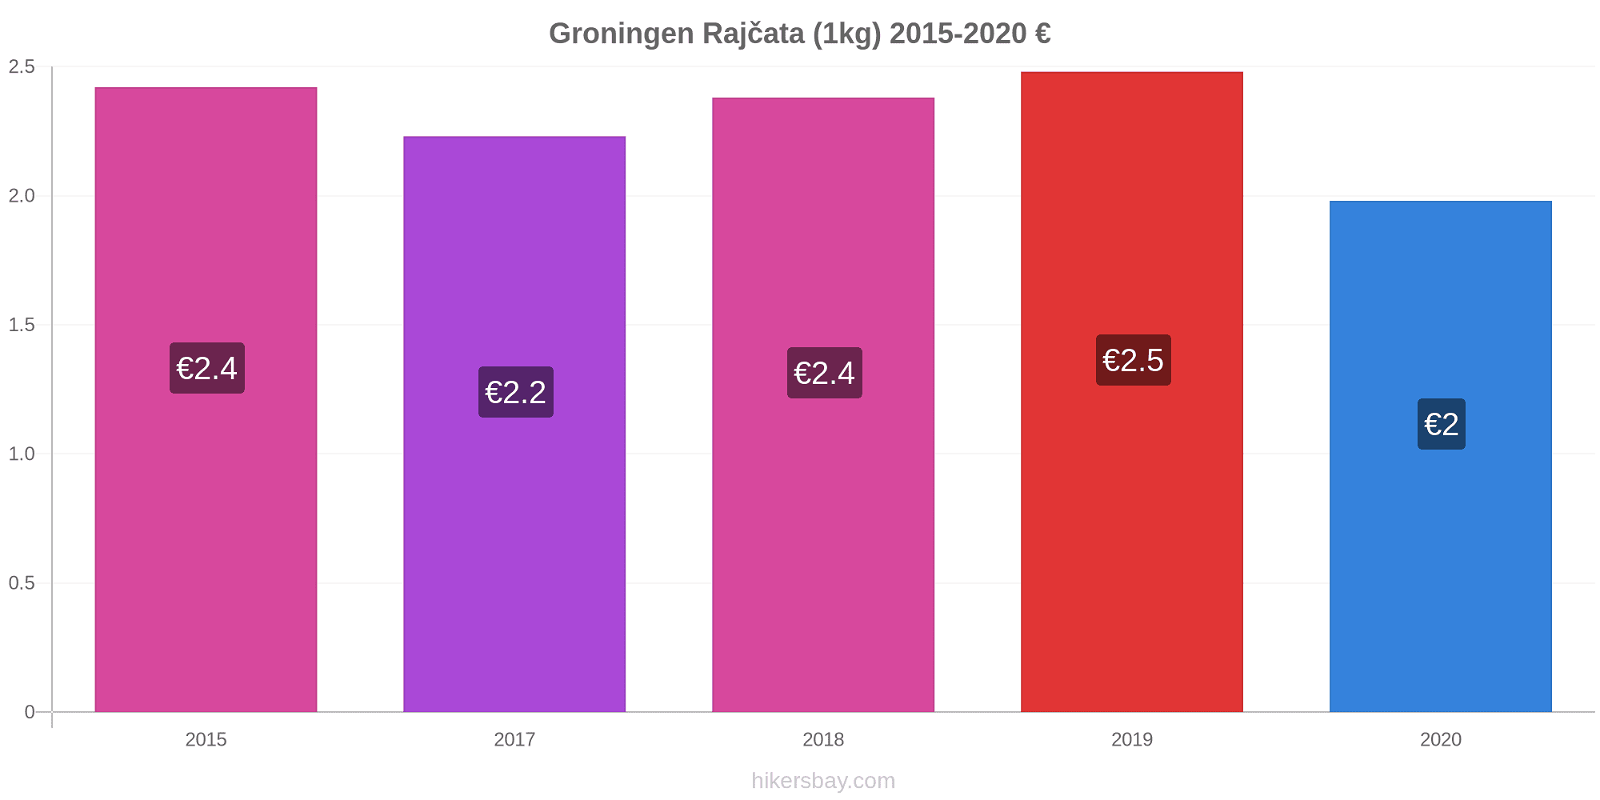 Groningen změny cen Rajčata (1kg) hikersbay.com